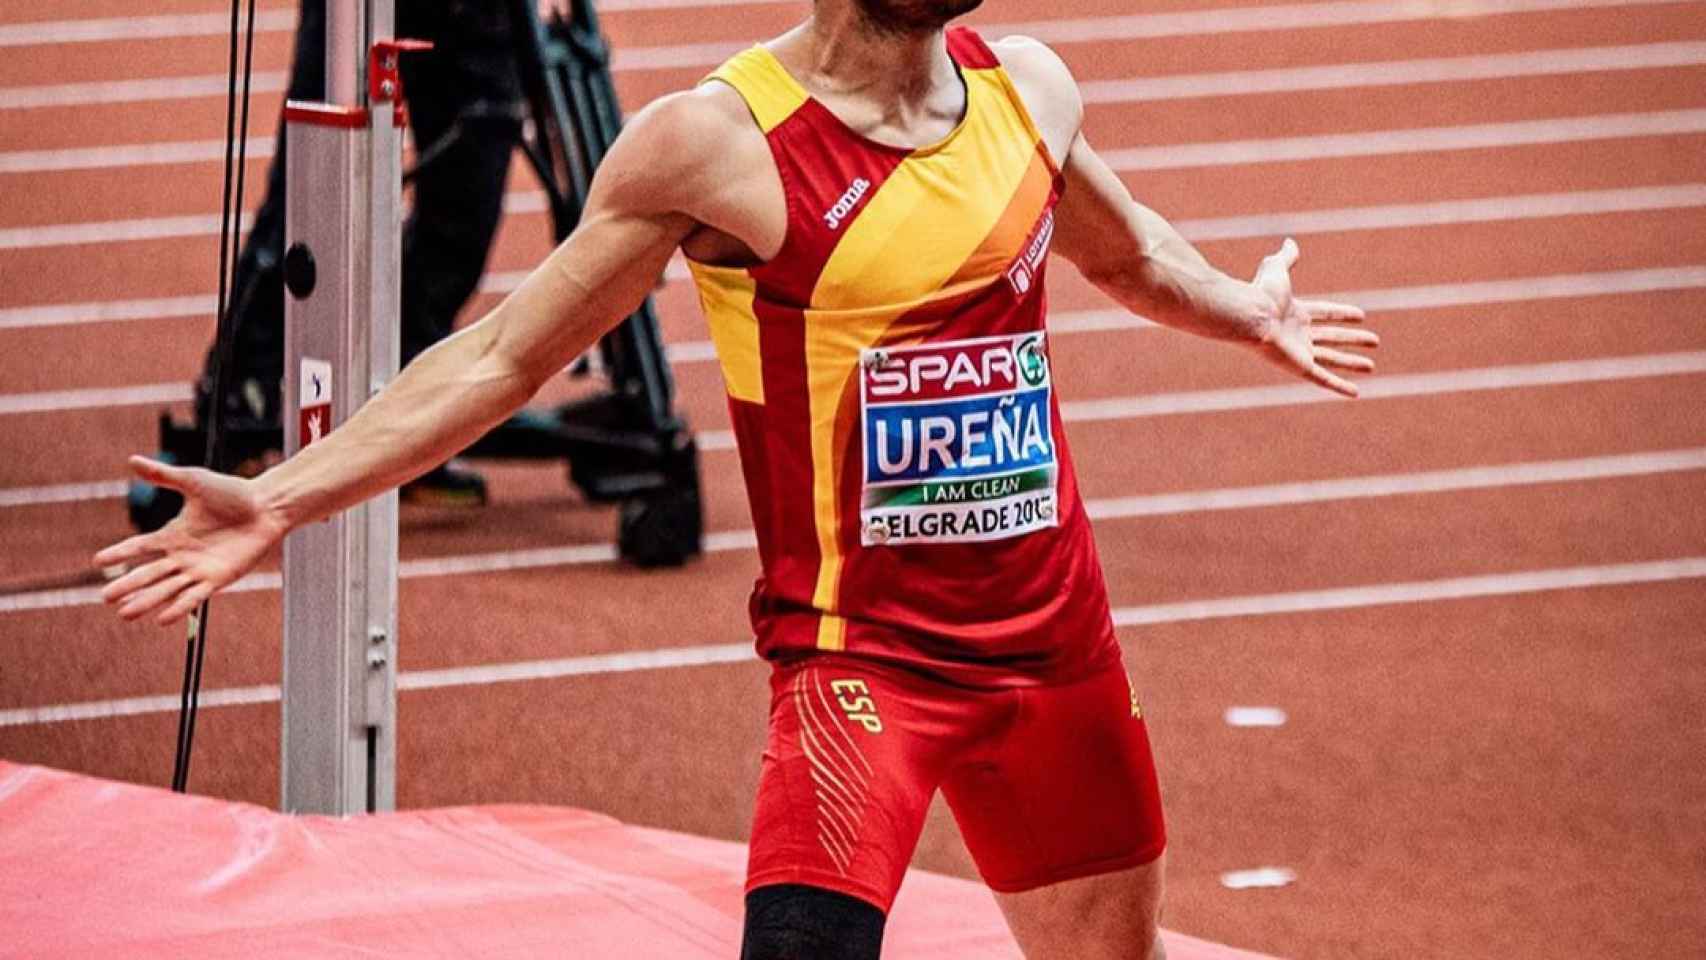 Jorge Ureña, en el Campeonato Europeo de Atletismo en Pista Cubierta de Belgrado 2017